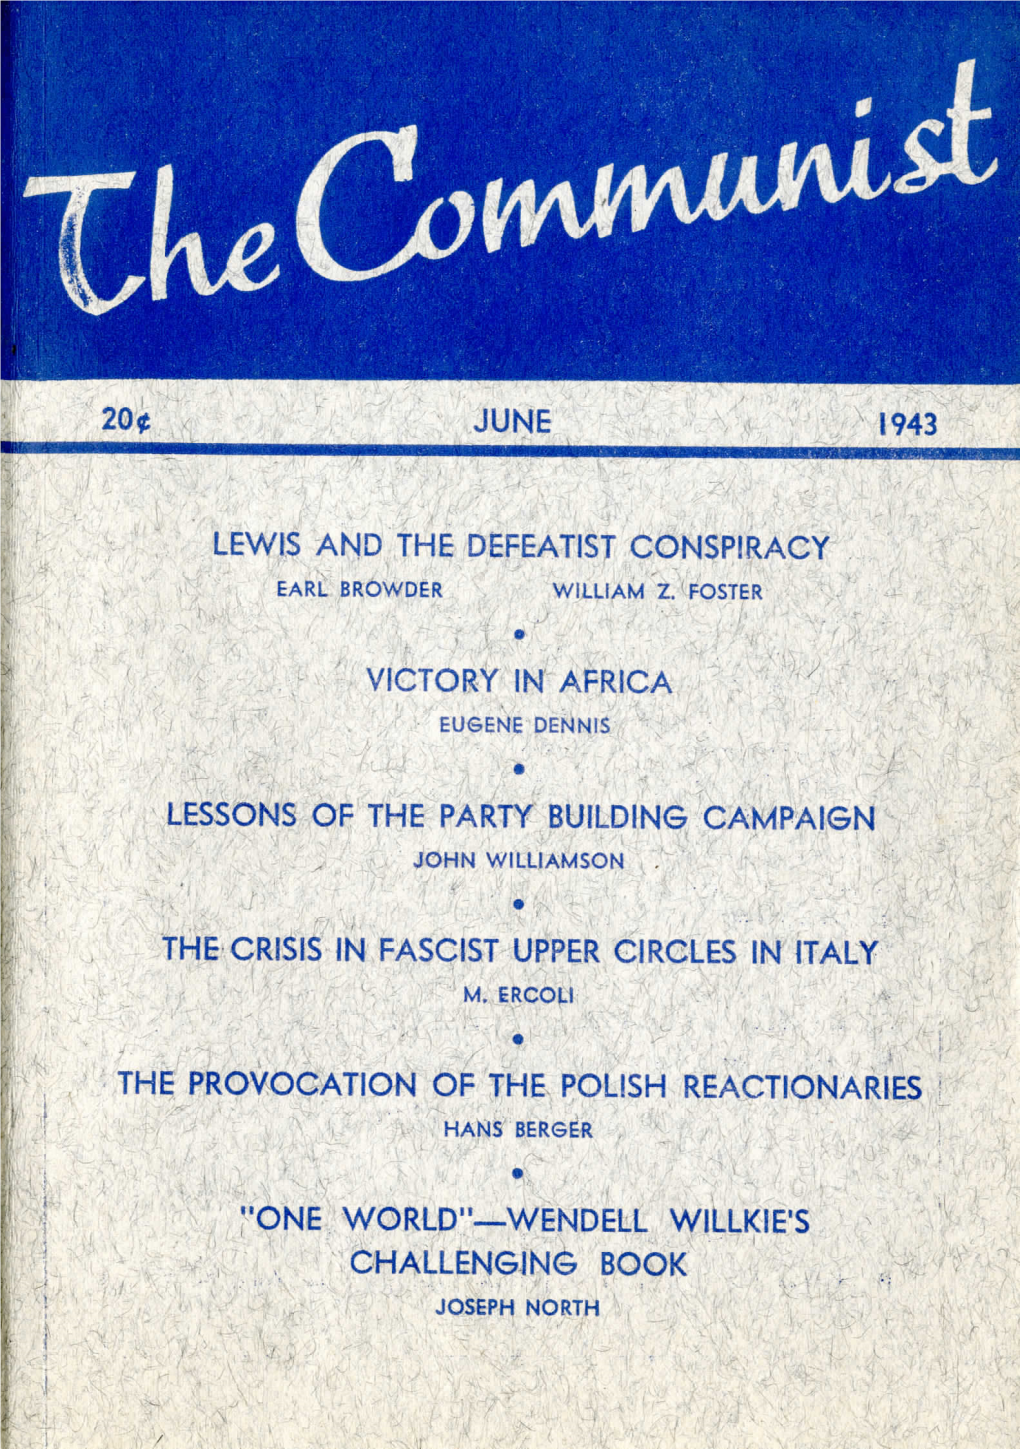 Volume 22 No. 6, June, 1943